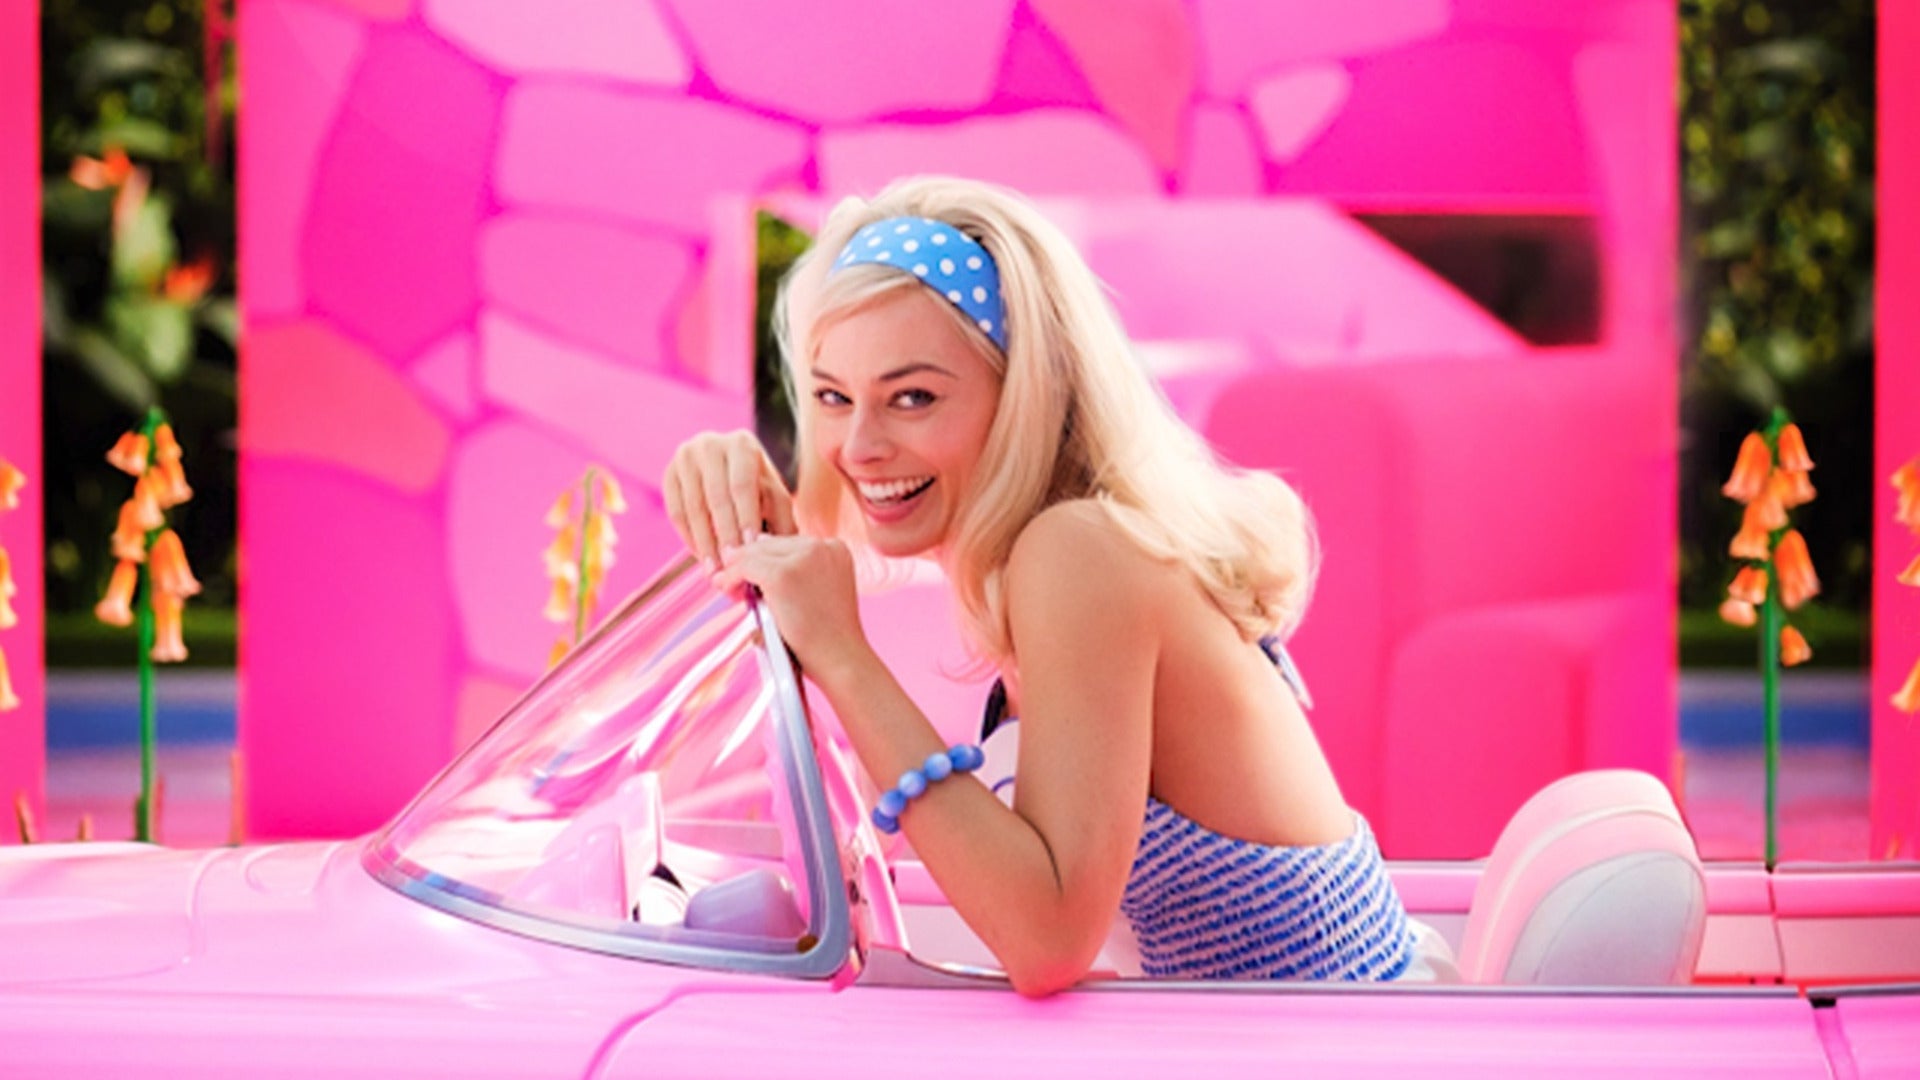 Foto de divulgação do filme Barbie